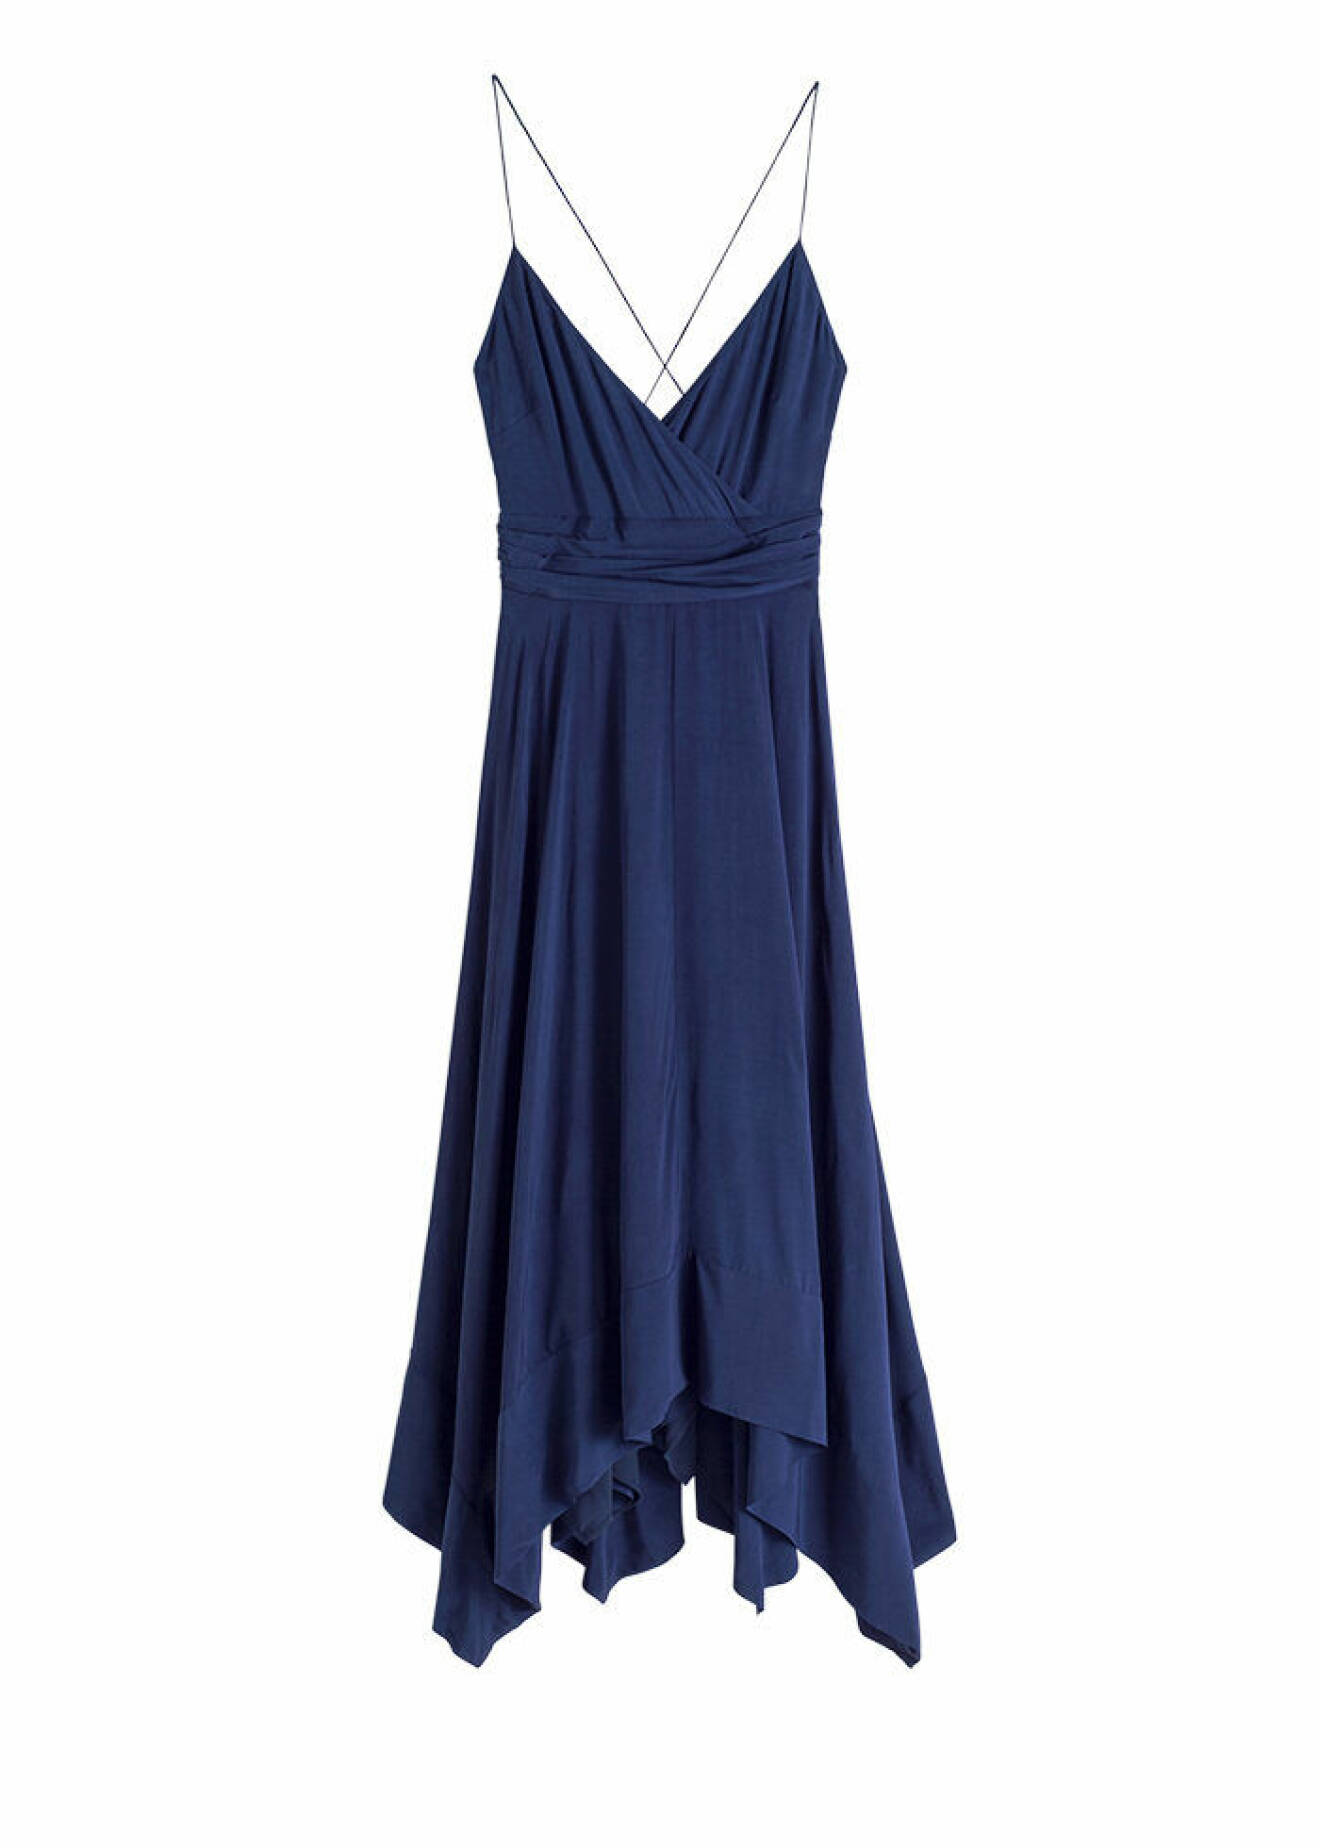 Marinblå klänning med smala axelband